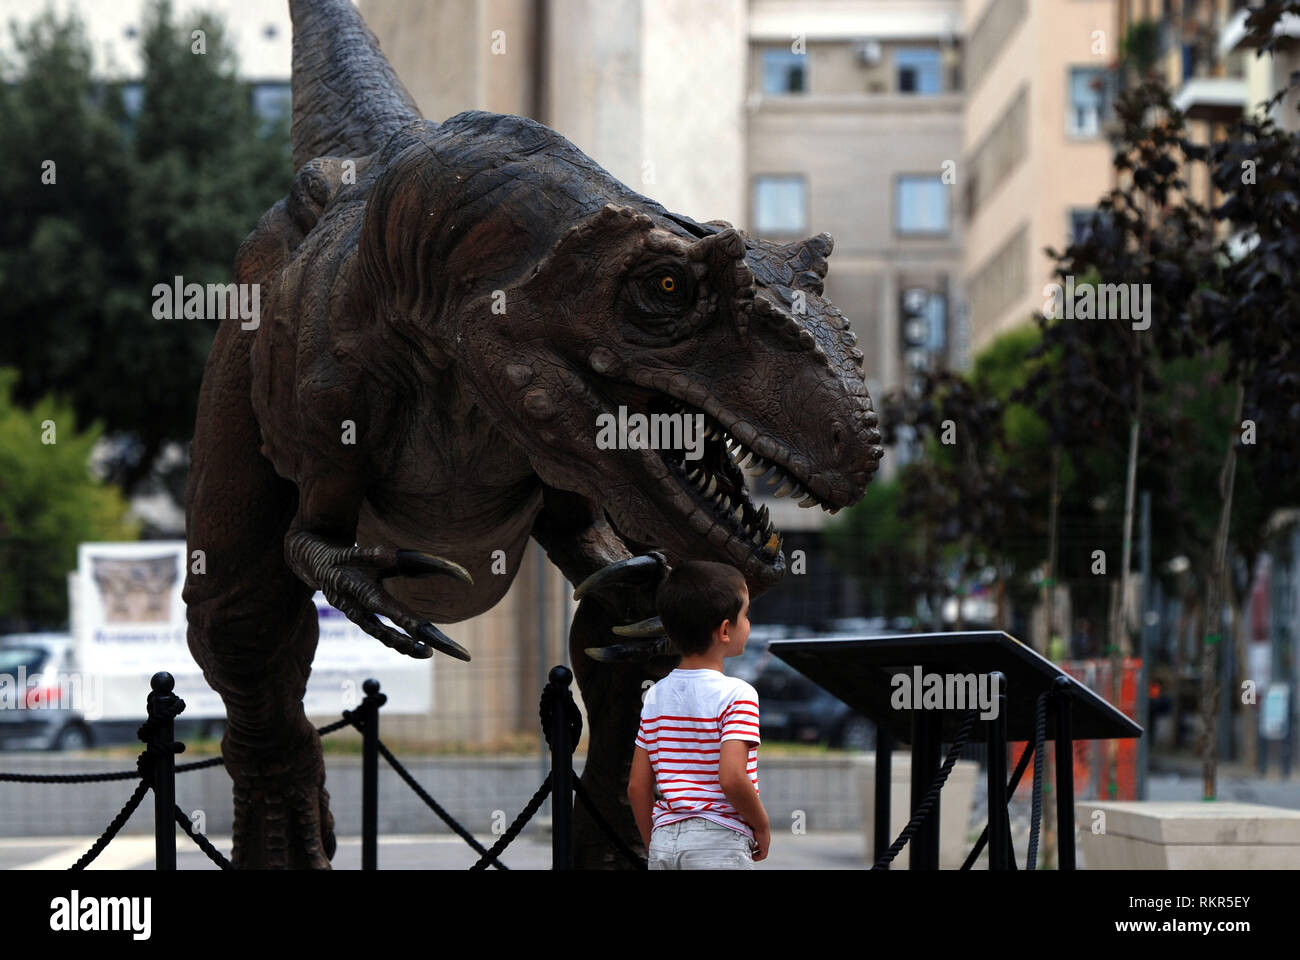 Les dinosaures marcher autour de la ville de reproduction à l'échelle 1:1 neovenator salerii dinosaures exposés dans la ville de Cosenza Calabria Italie 2018 Banque D'Images